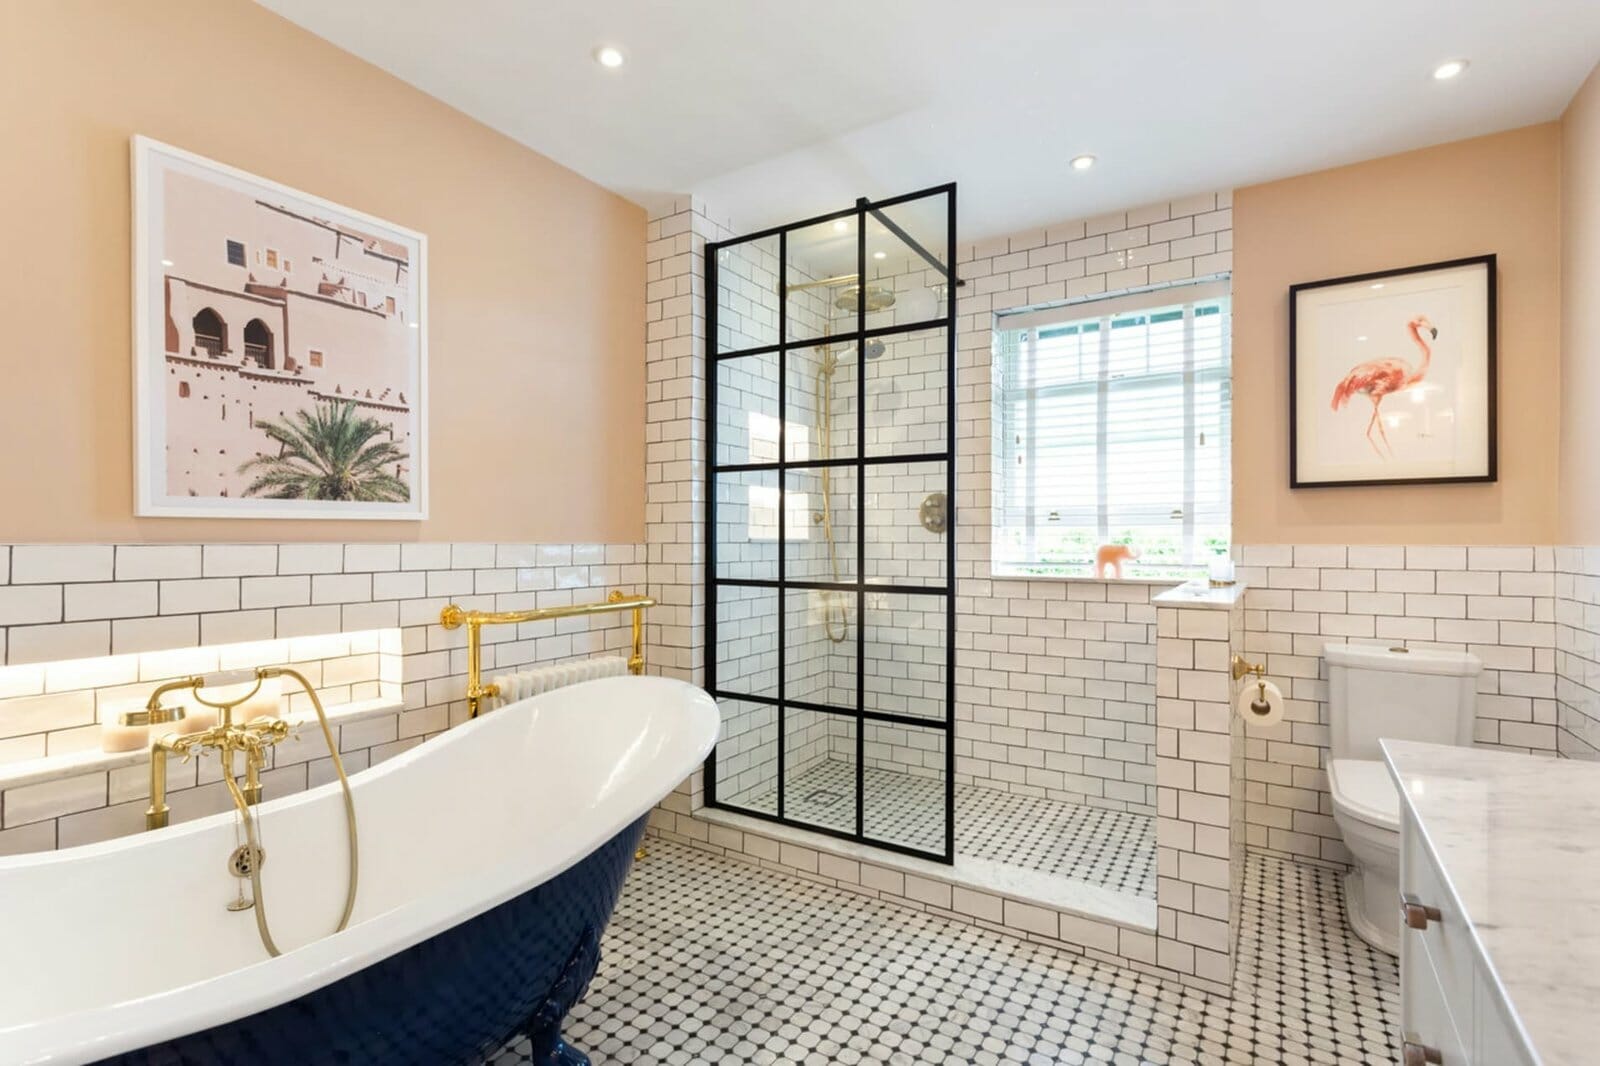 20 Bathroom Tile Ideas You Ll Want To, Classic Bathroom Floor Tile Ideas